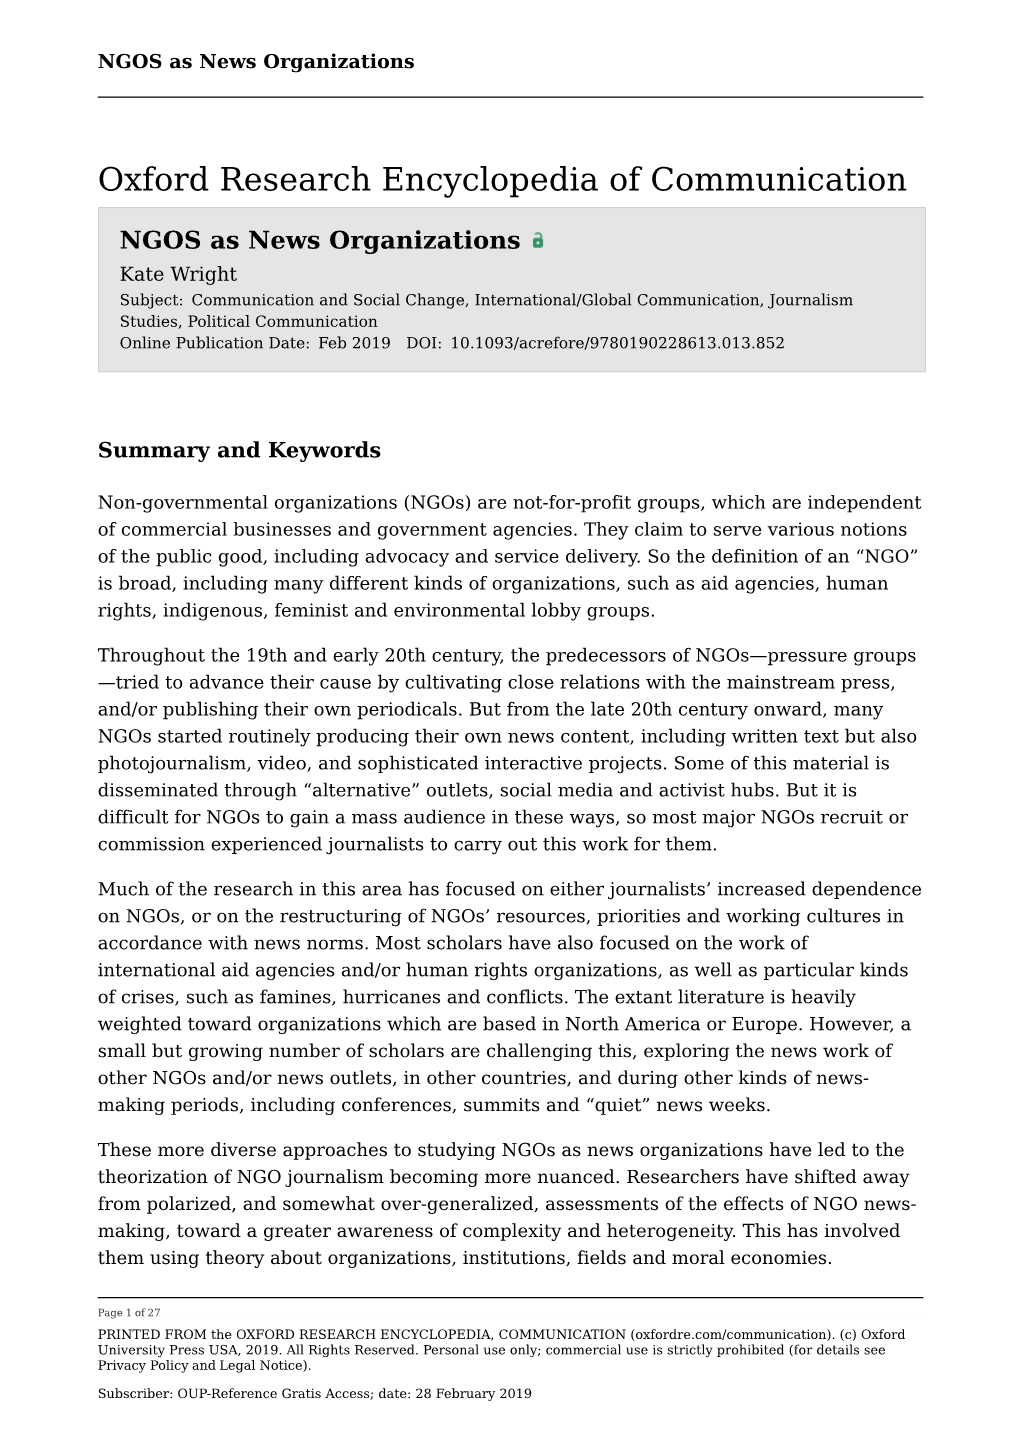 NGOS As News Organizations